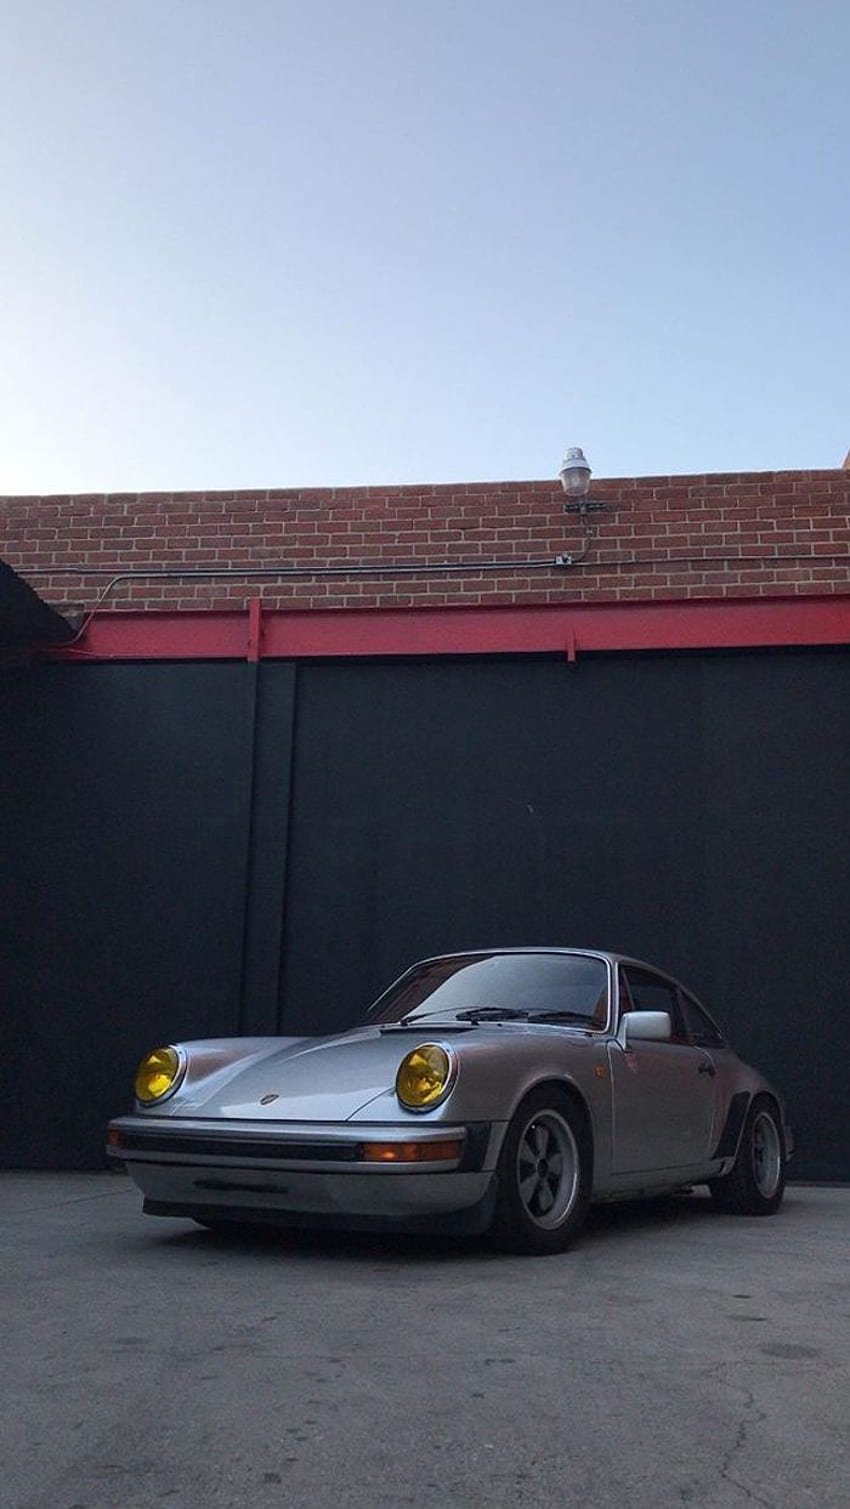 Another Porsche 911 (930) from Magnus Walker's instagram HD phone wallpaper